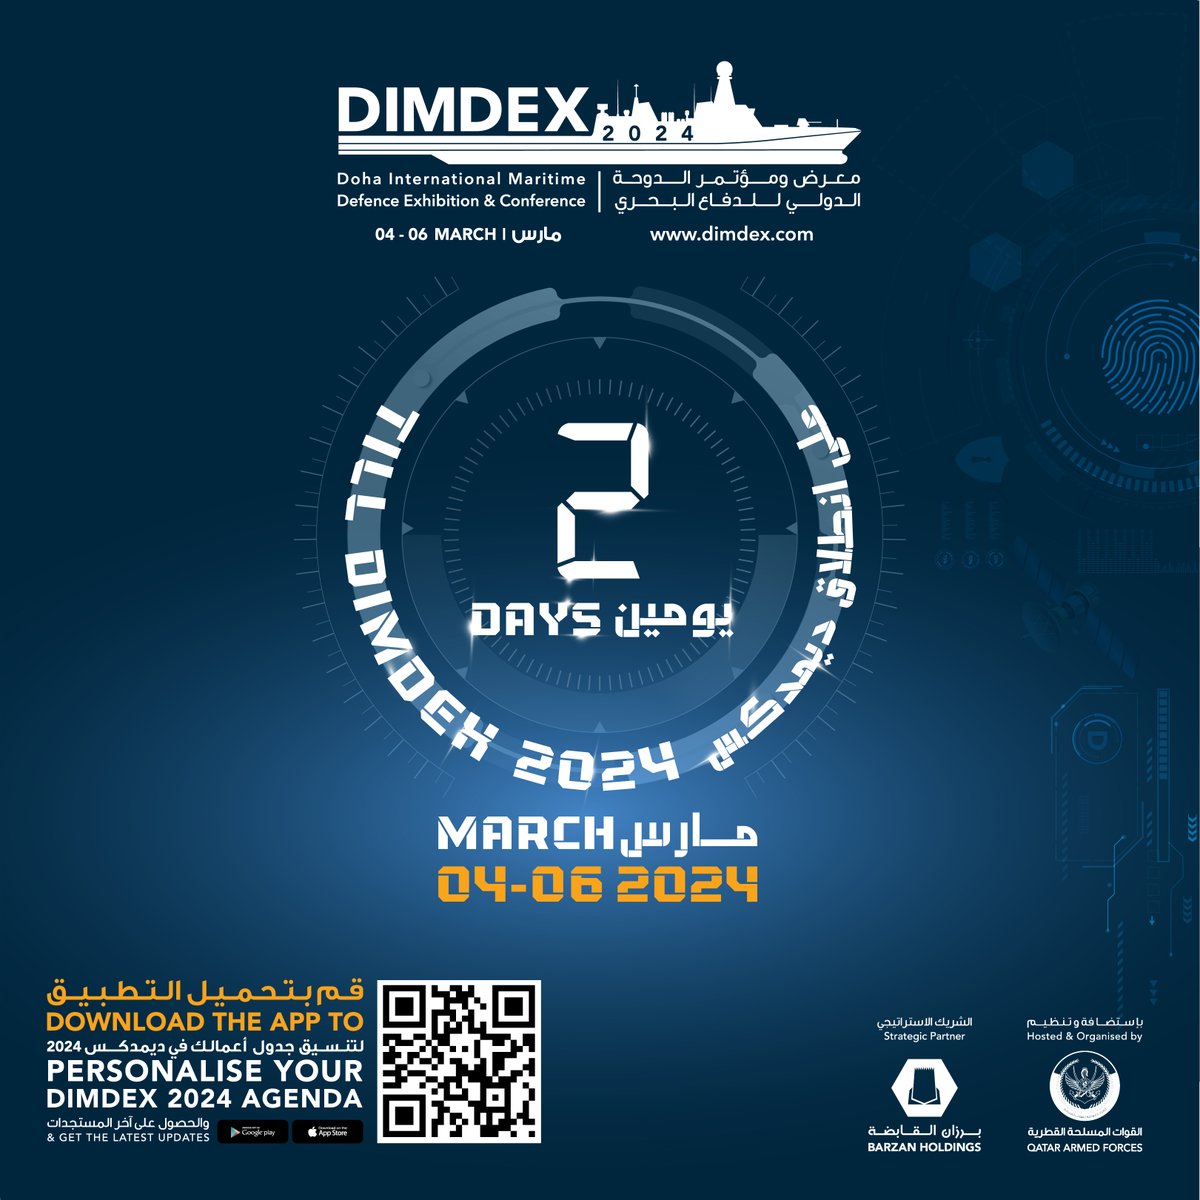 يومان على بدء فعاليات #ديمدكس2024. استعدوا لزيارة الحدث الدولي الرائد في مجال الأمن والدفاع البحري والاطلاع على أحدث تكنولوجيا الدفاع من 4 إلى 6 مارس في مركز قطر الوطني للمؤتمرات. #ديمدكس2024